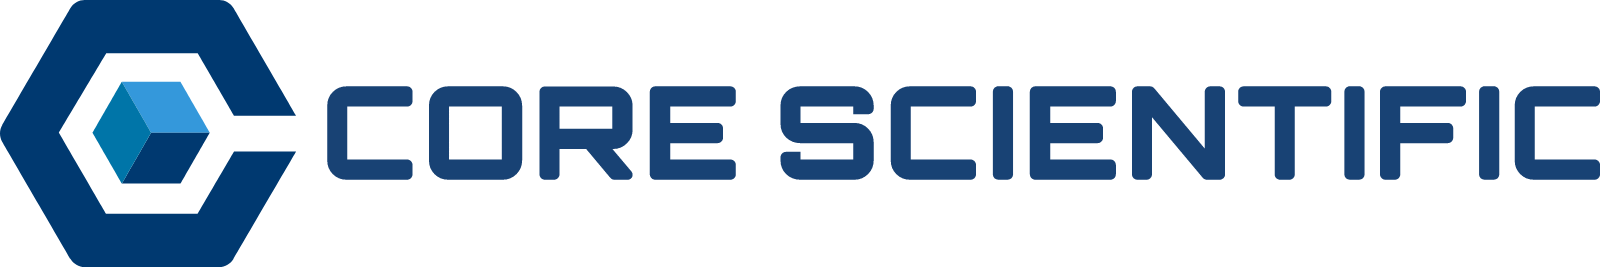 Core Scientific logo large (transparent PNG)